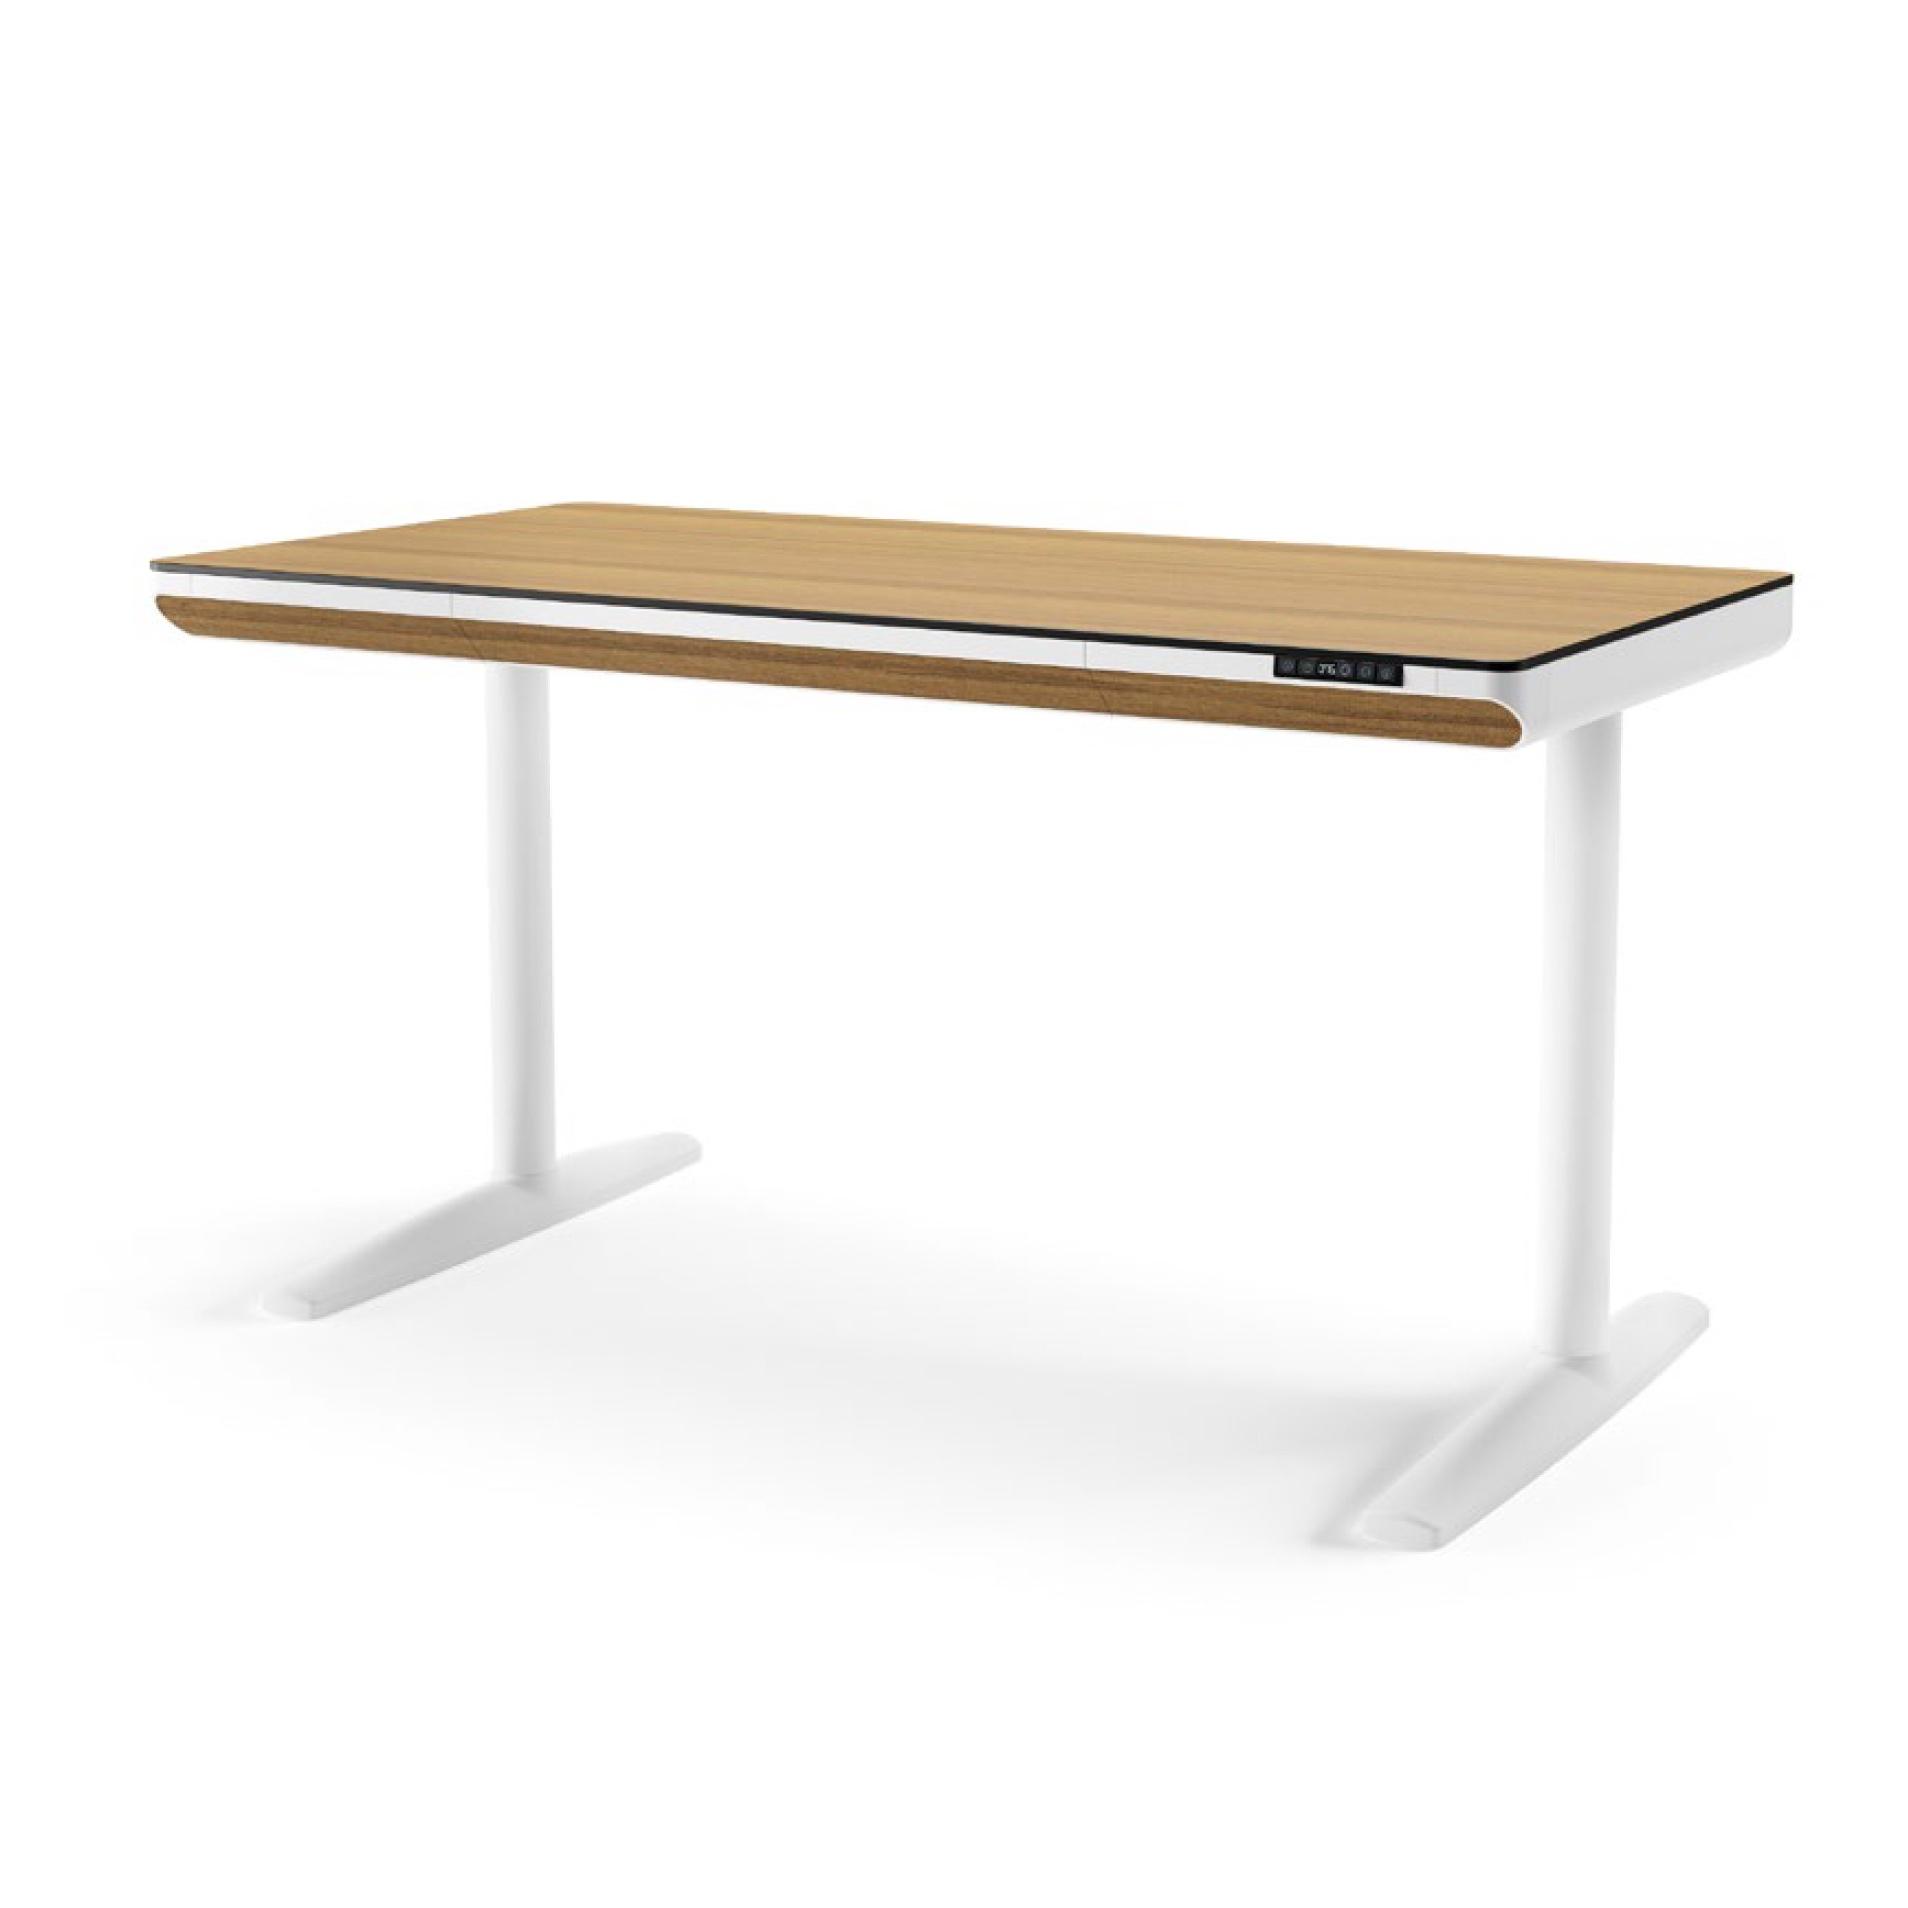 Mesa escritorio elevable FLAP 140 x 70, minimalista blanco.